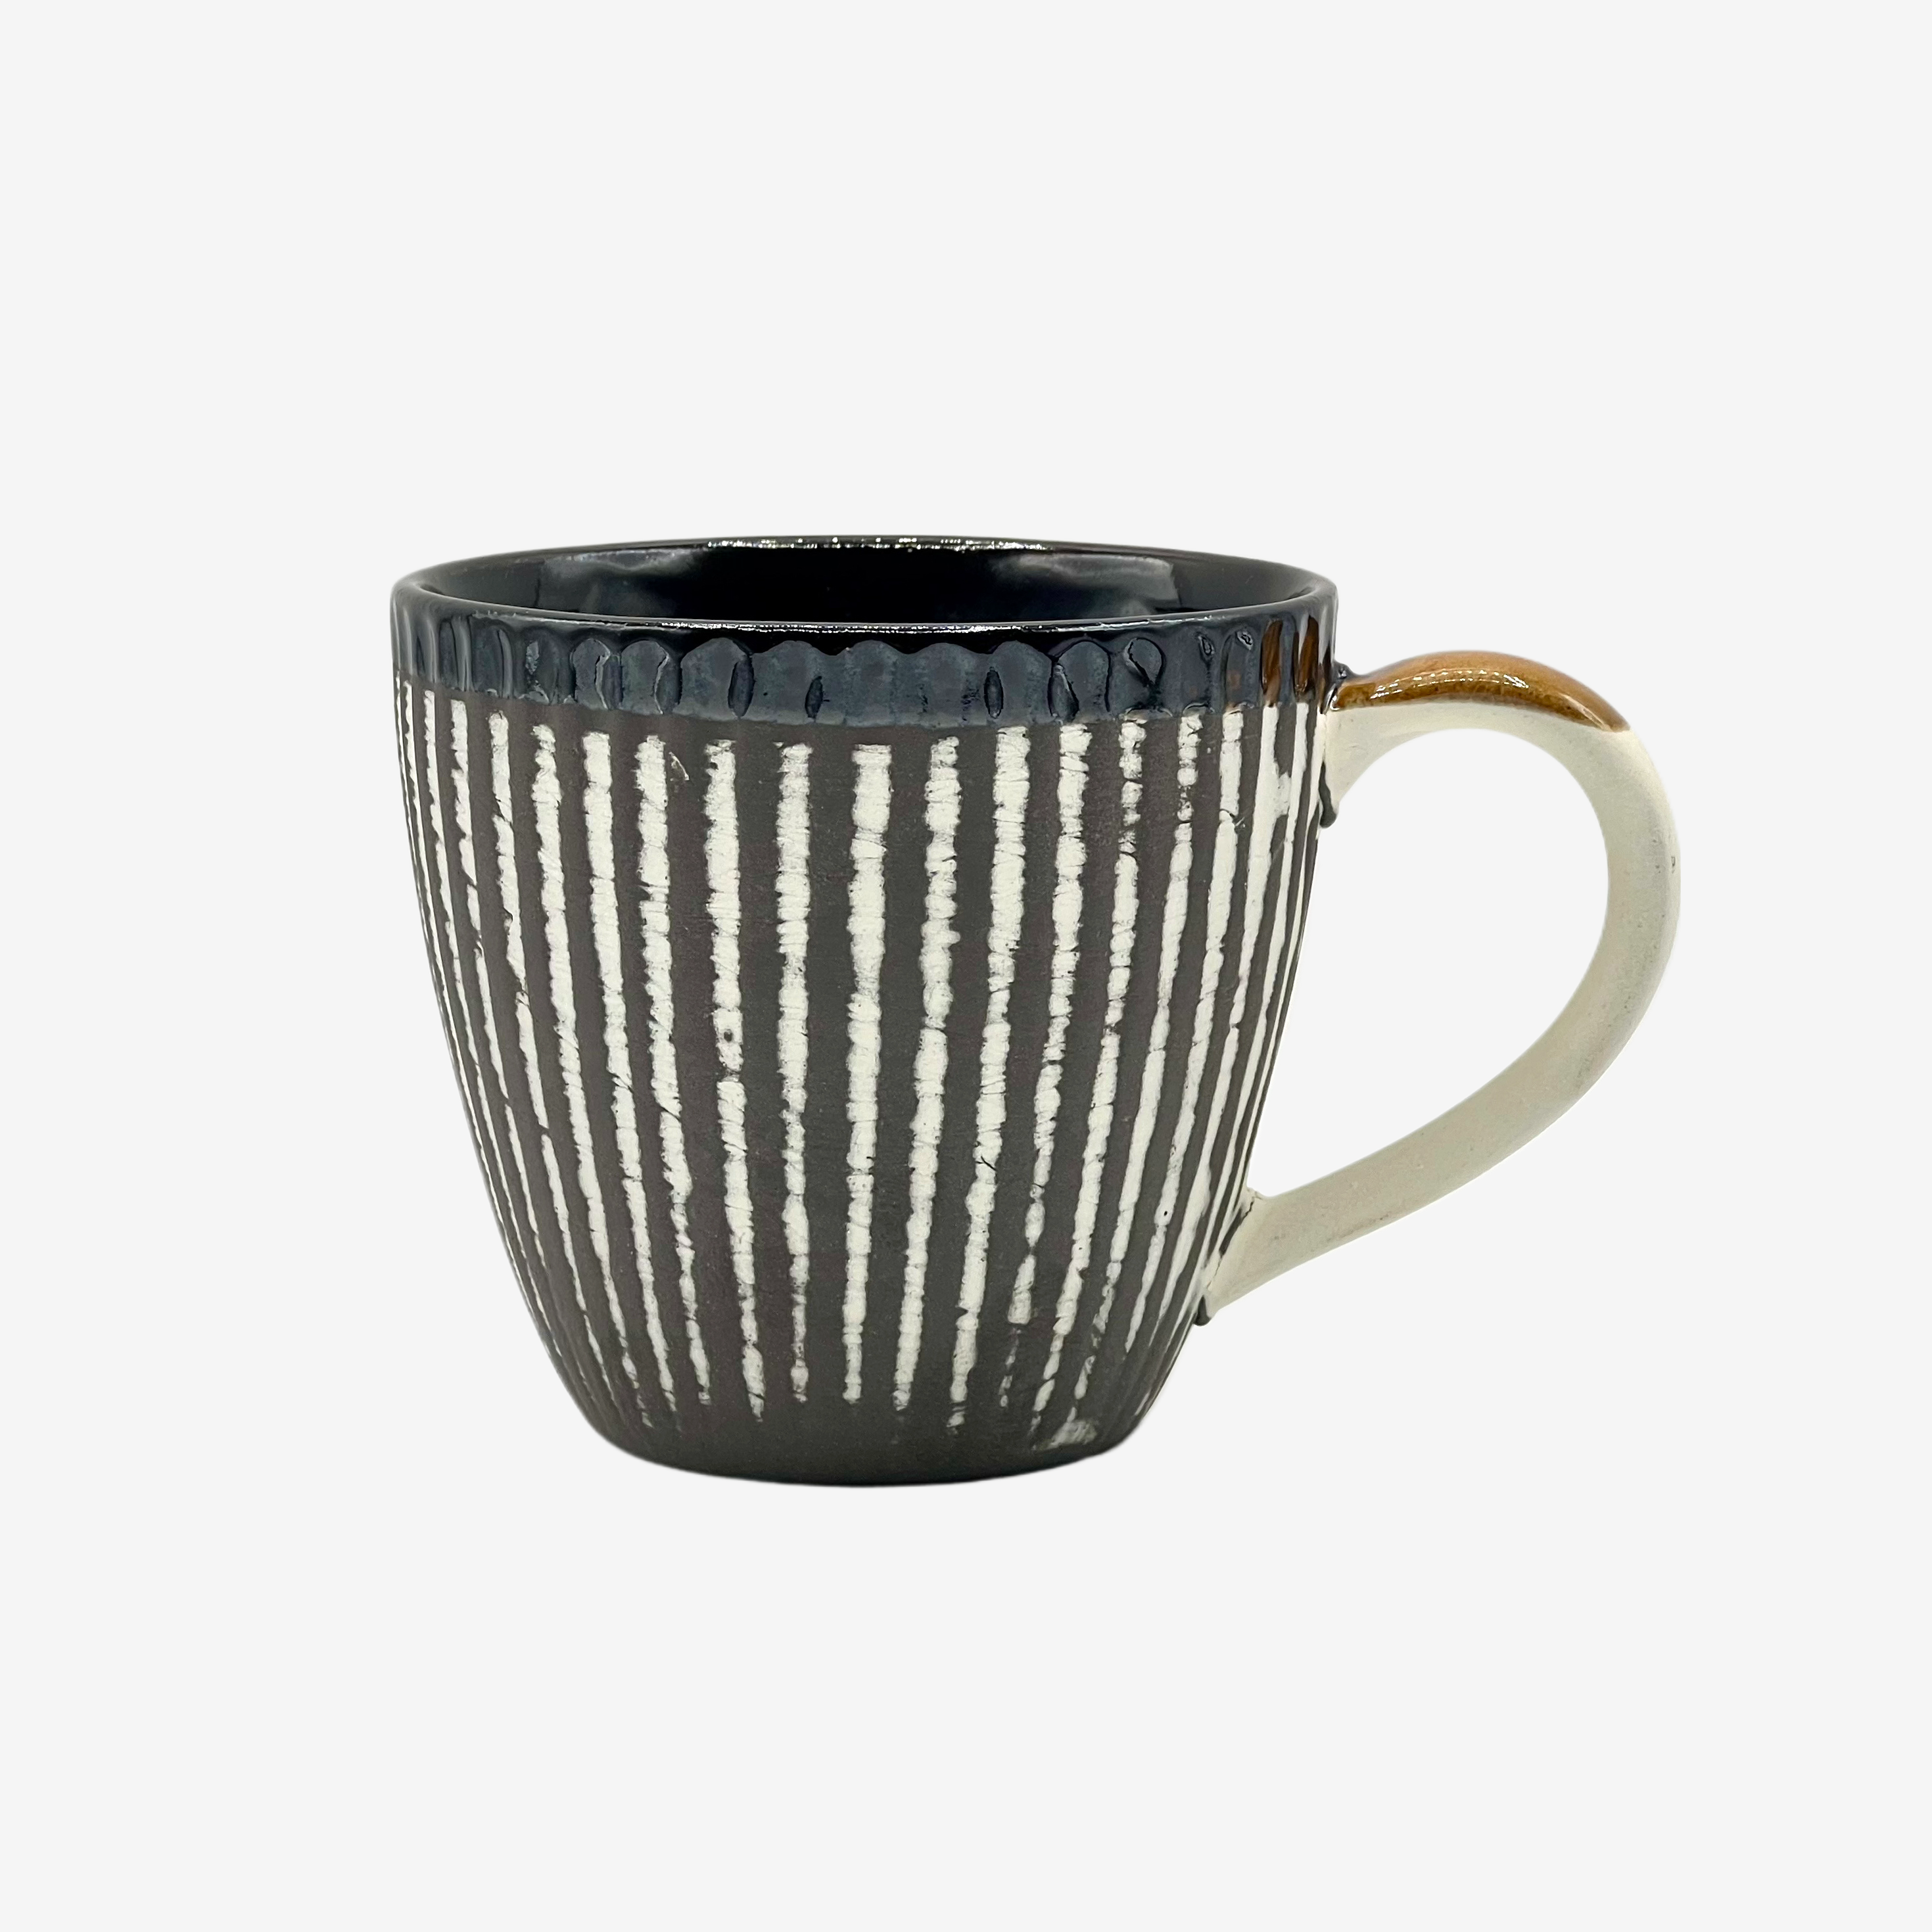 Kesho White Black Stripe Mug - Japanese Tea Mug